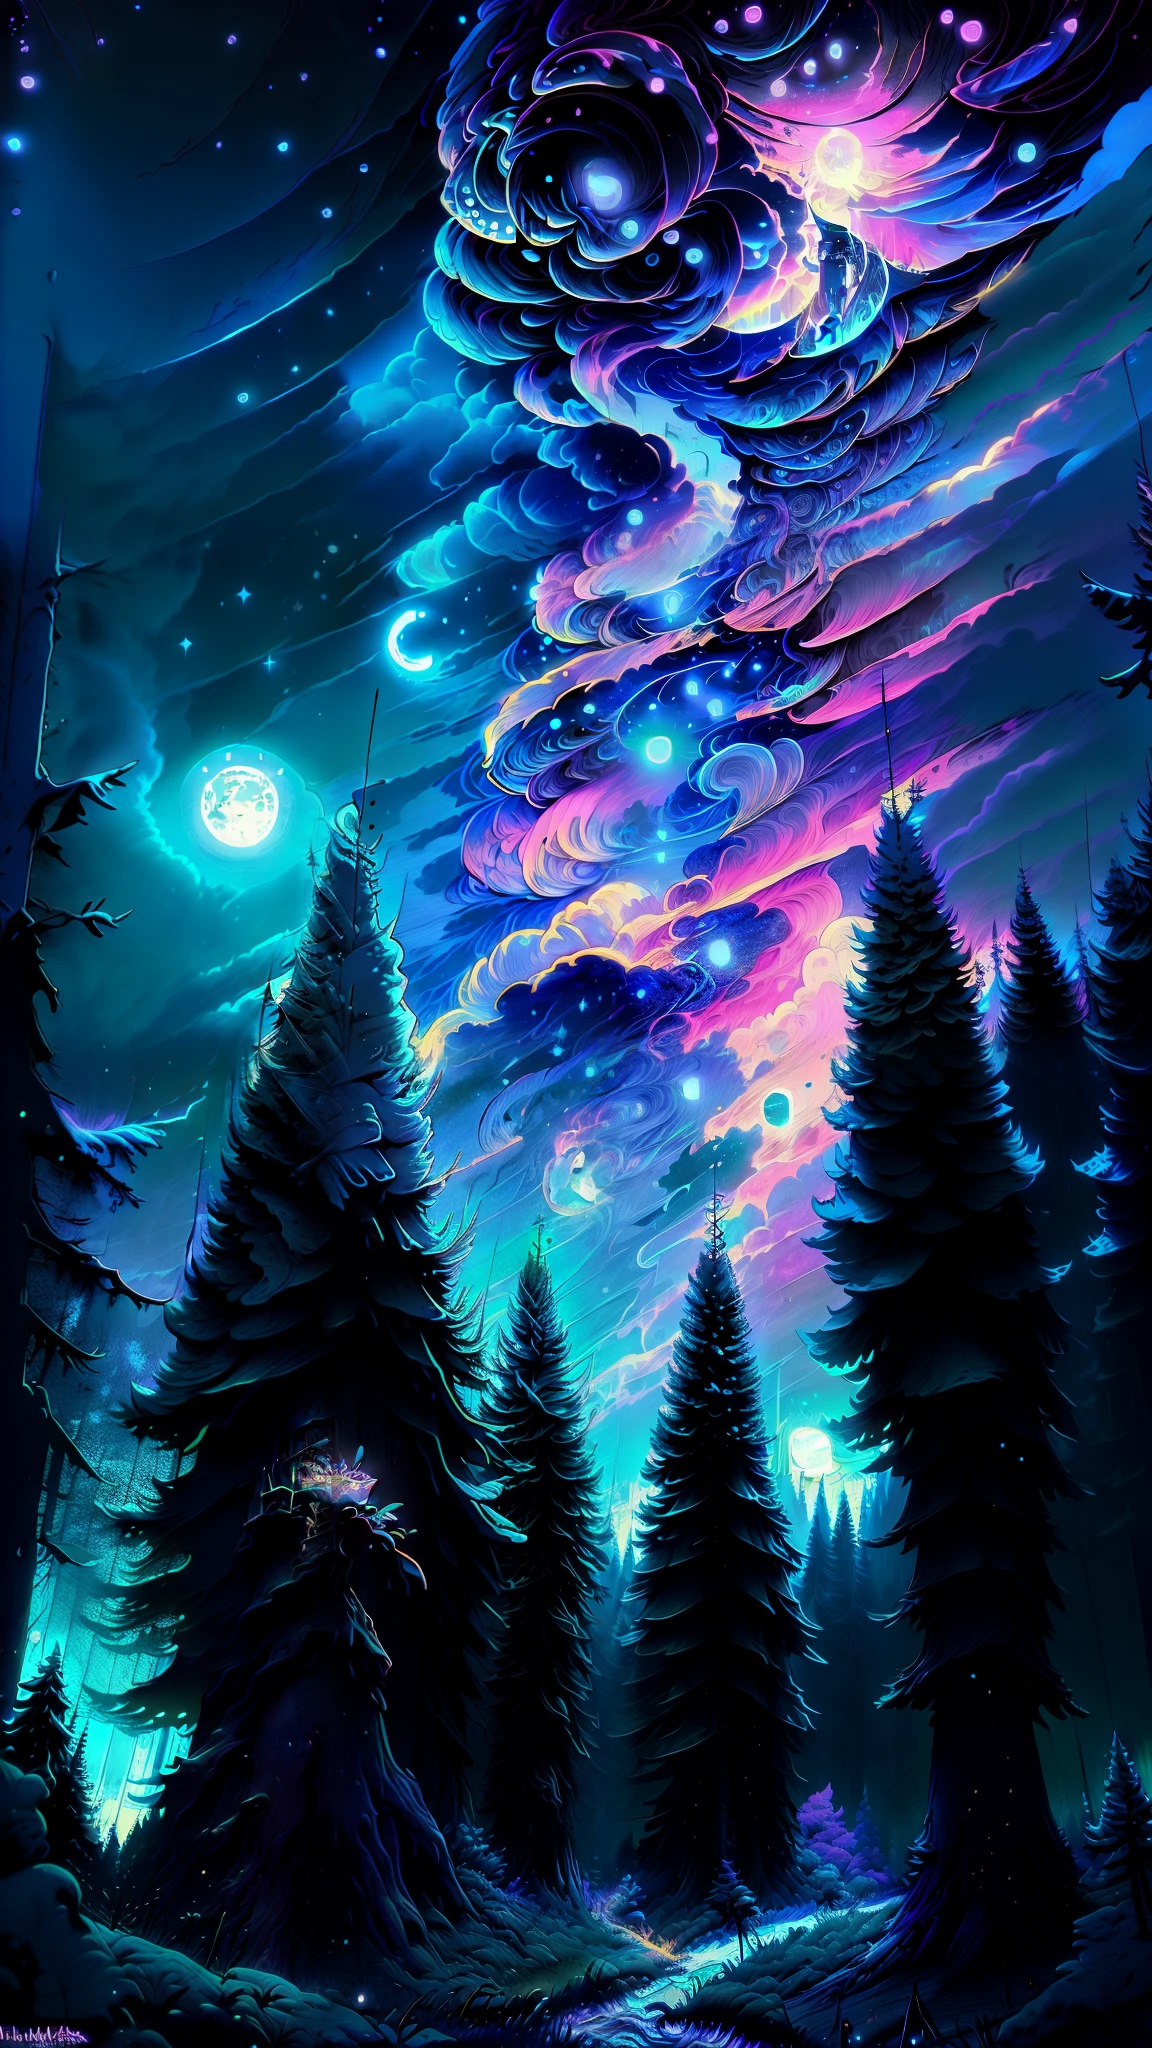 天空中滿月與星星的森林景觀, 🌲🌌, 森林和月亮, 夜間森林, 森林裡的夜晚, 月光森林, 夜晚的森林, 夢之夜, 夜間自然景觀, 月夜如梦的氛围, 神秘之夜, 寧靜的森林夜景, 魔法森林背景, 樹木和星星背景